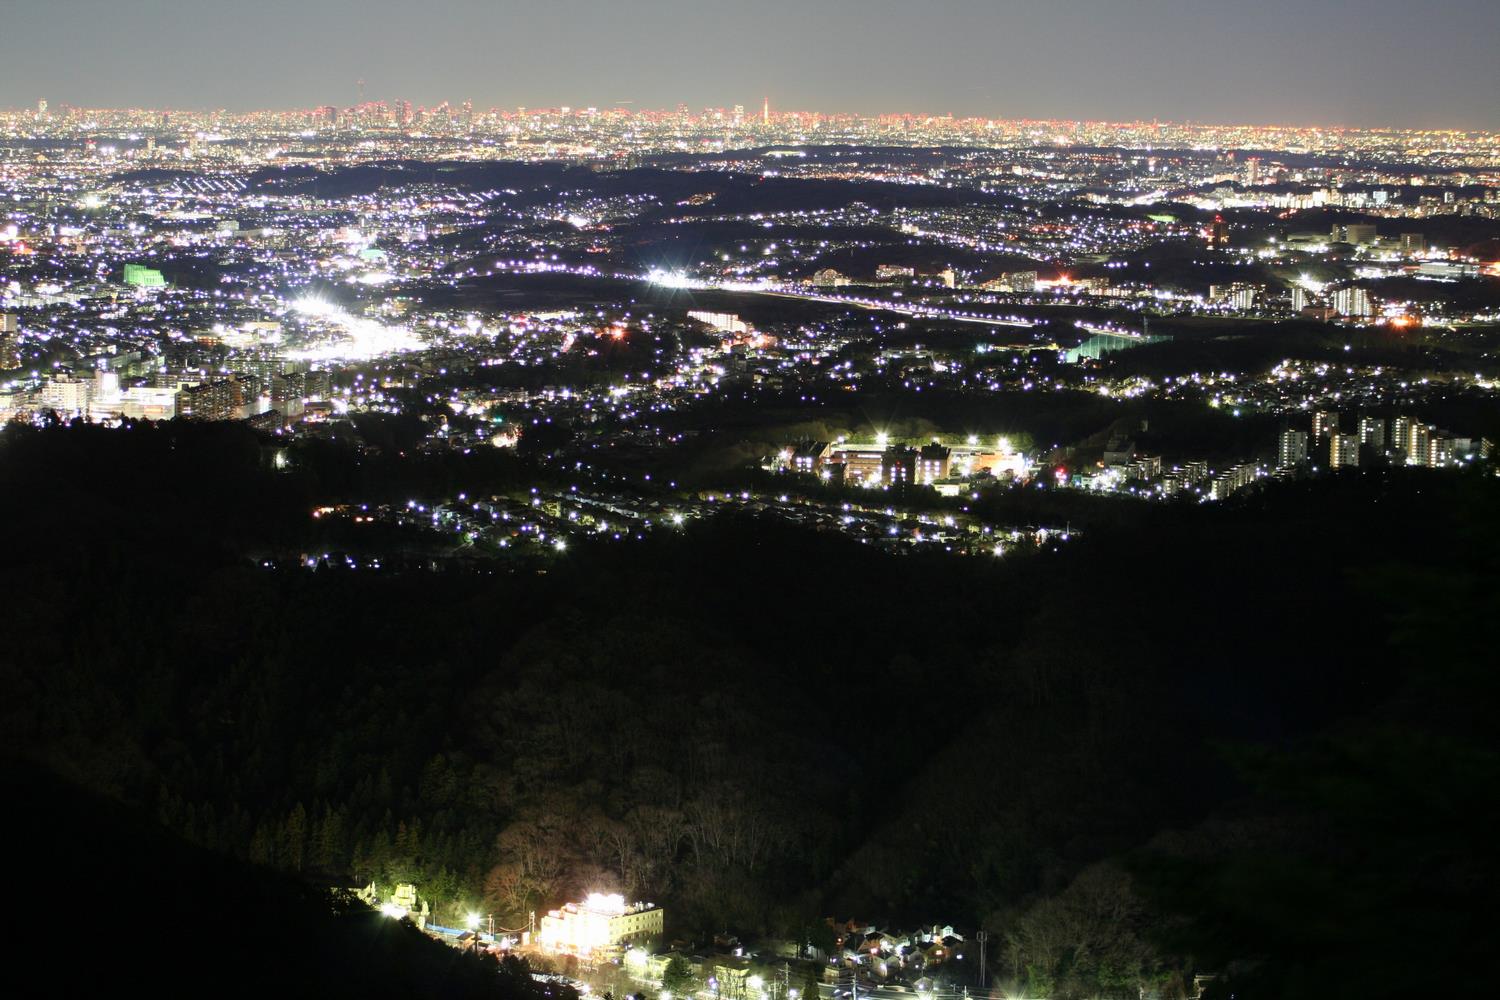 高尾山からの夜景 八王子市公式シティプロモーションサイト 都会にないもの 田舎にないもの ここにある